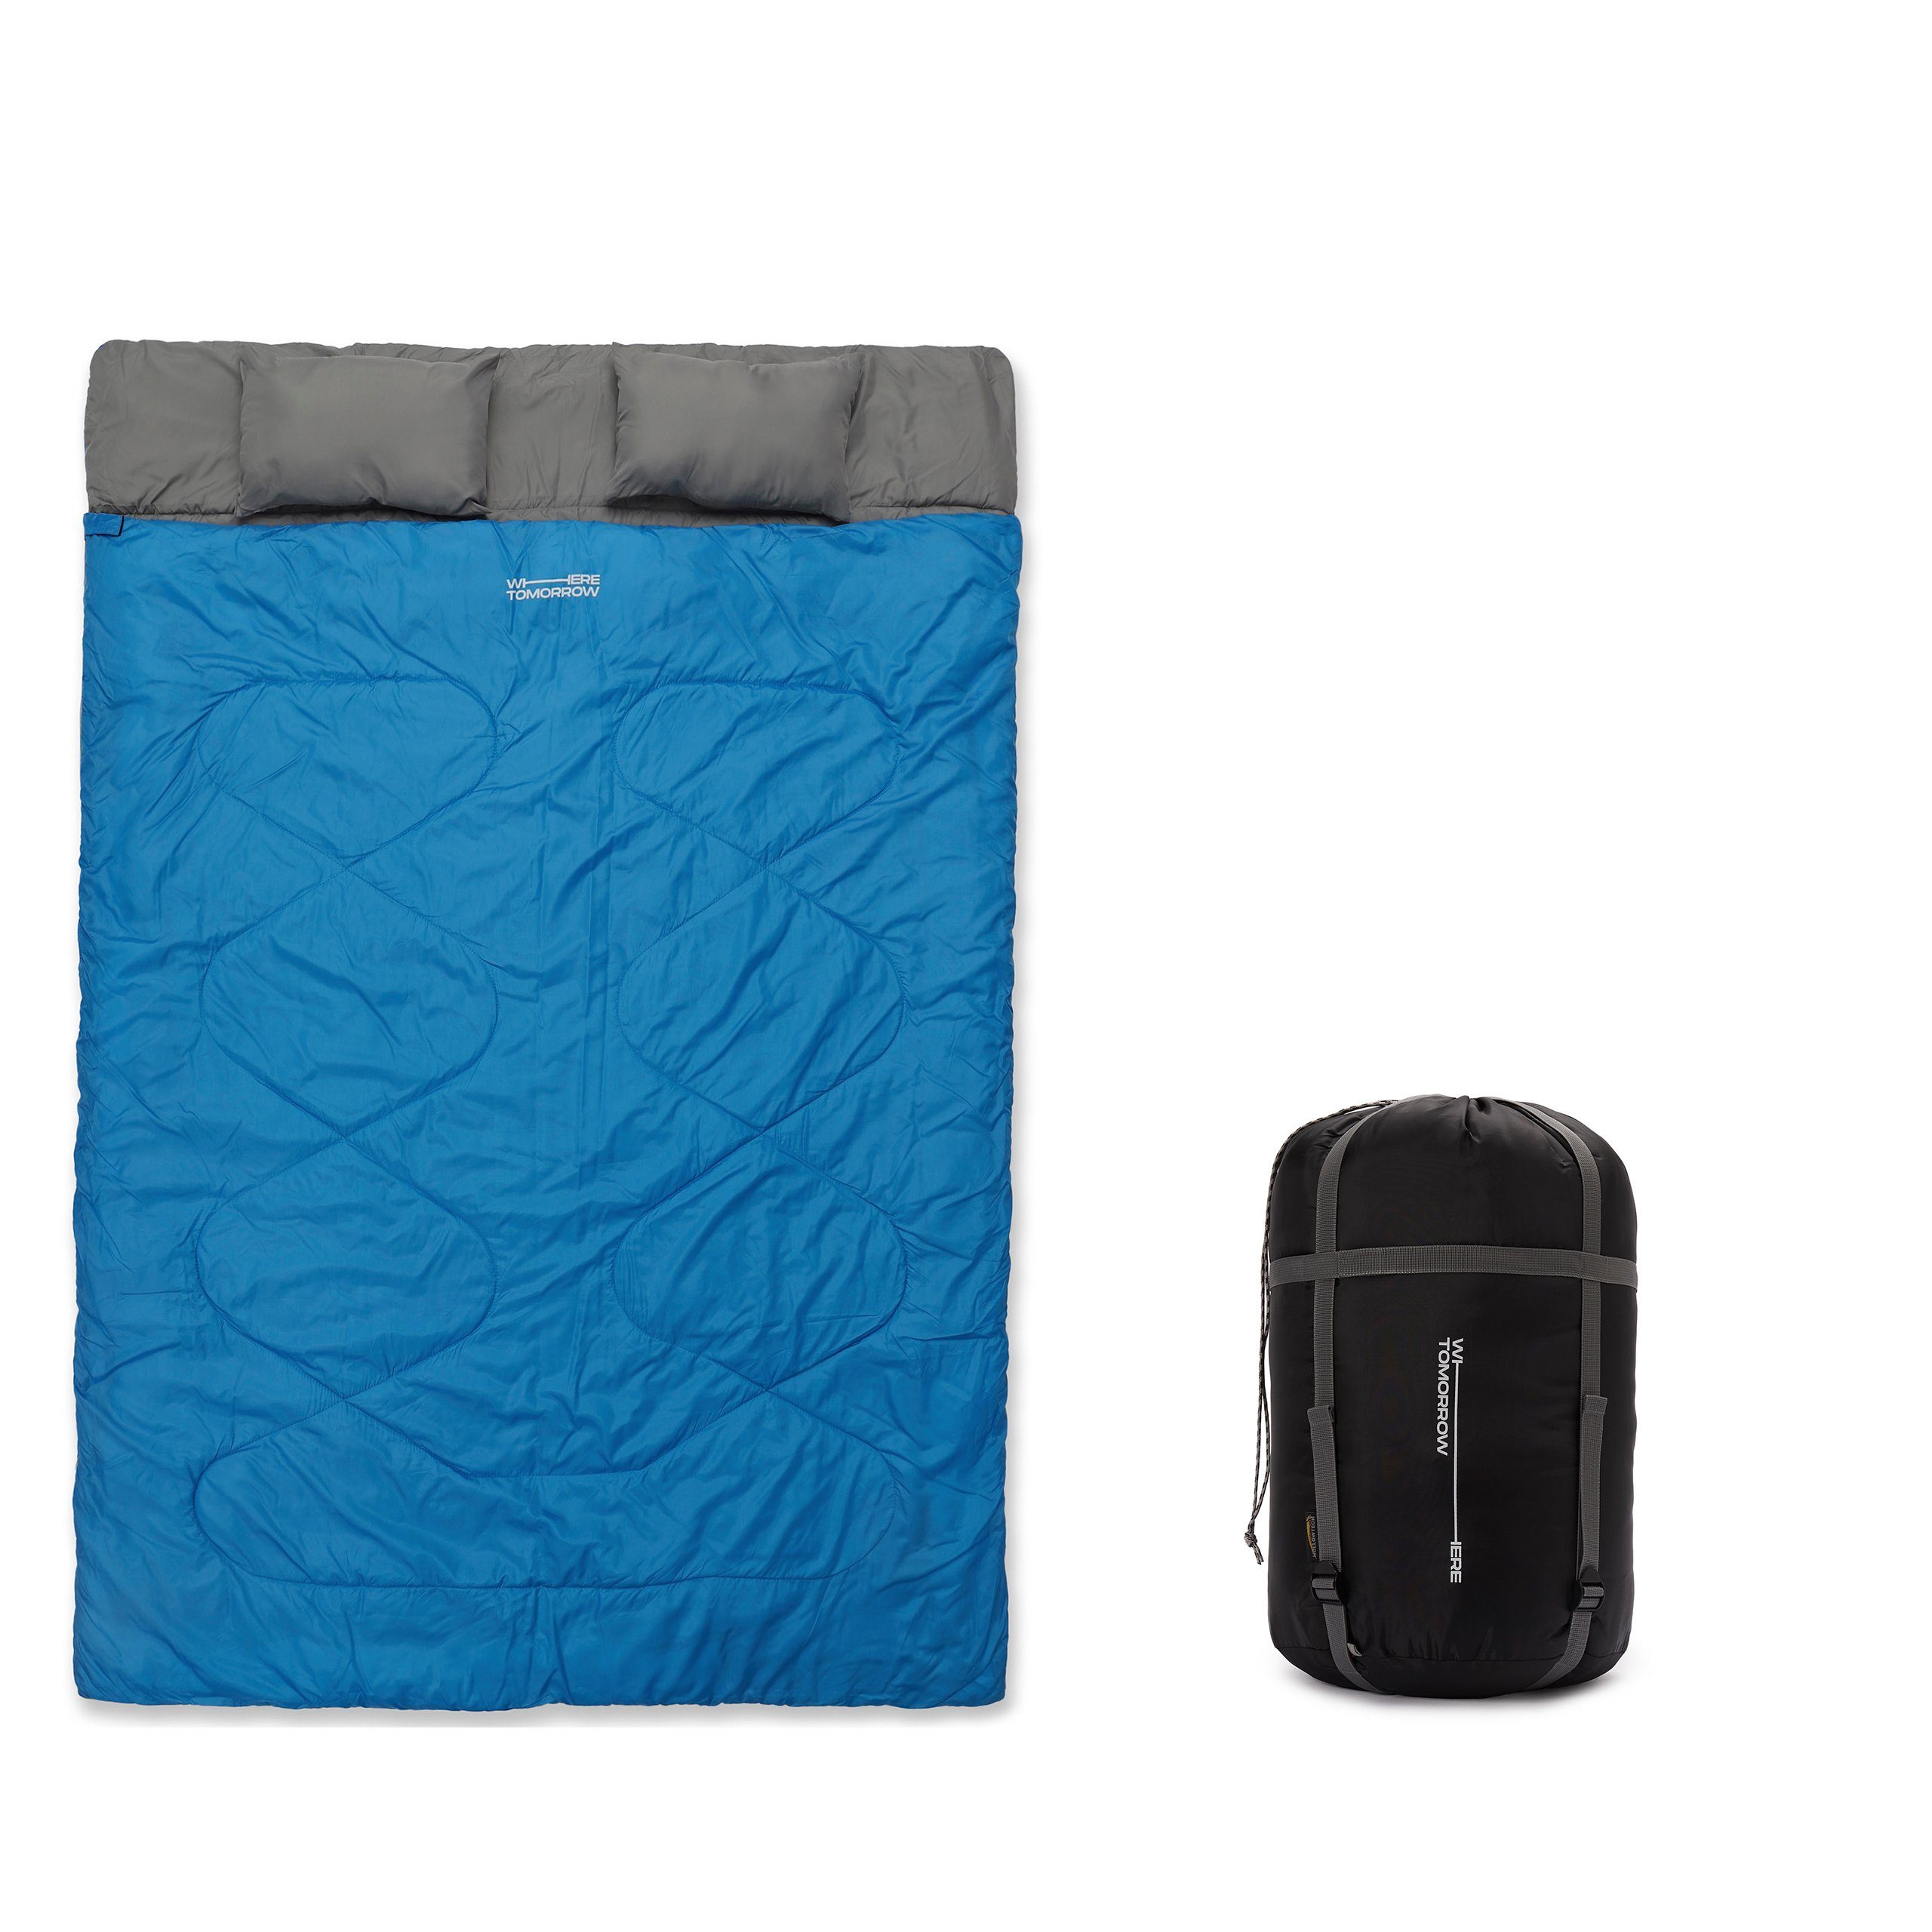 Lumaland Doppelschlafsack 2-Personen Schlafsack groß Kopfkissen, 190x30x150cm - Hüttenschlafsack wasserabweisend, atmungsaktiv Royalblau